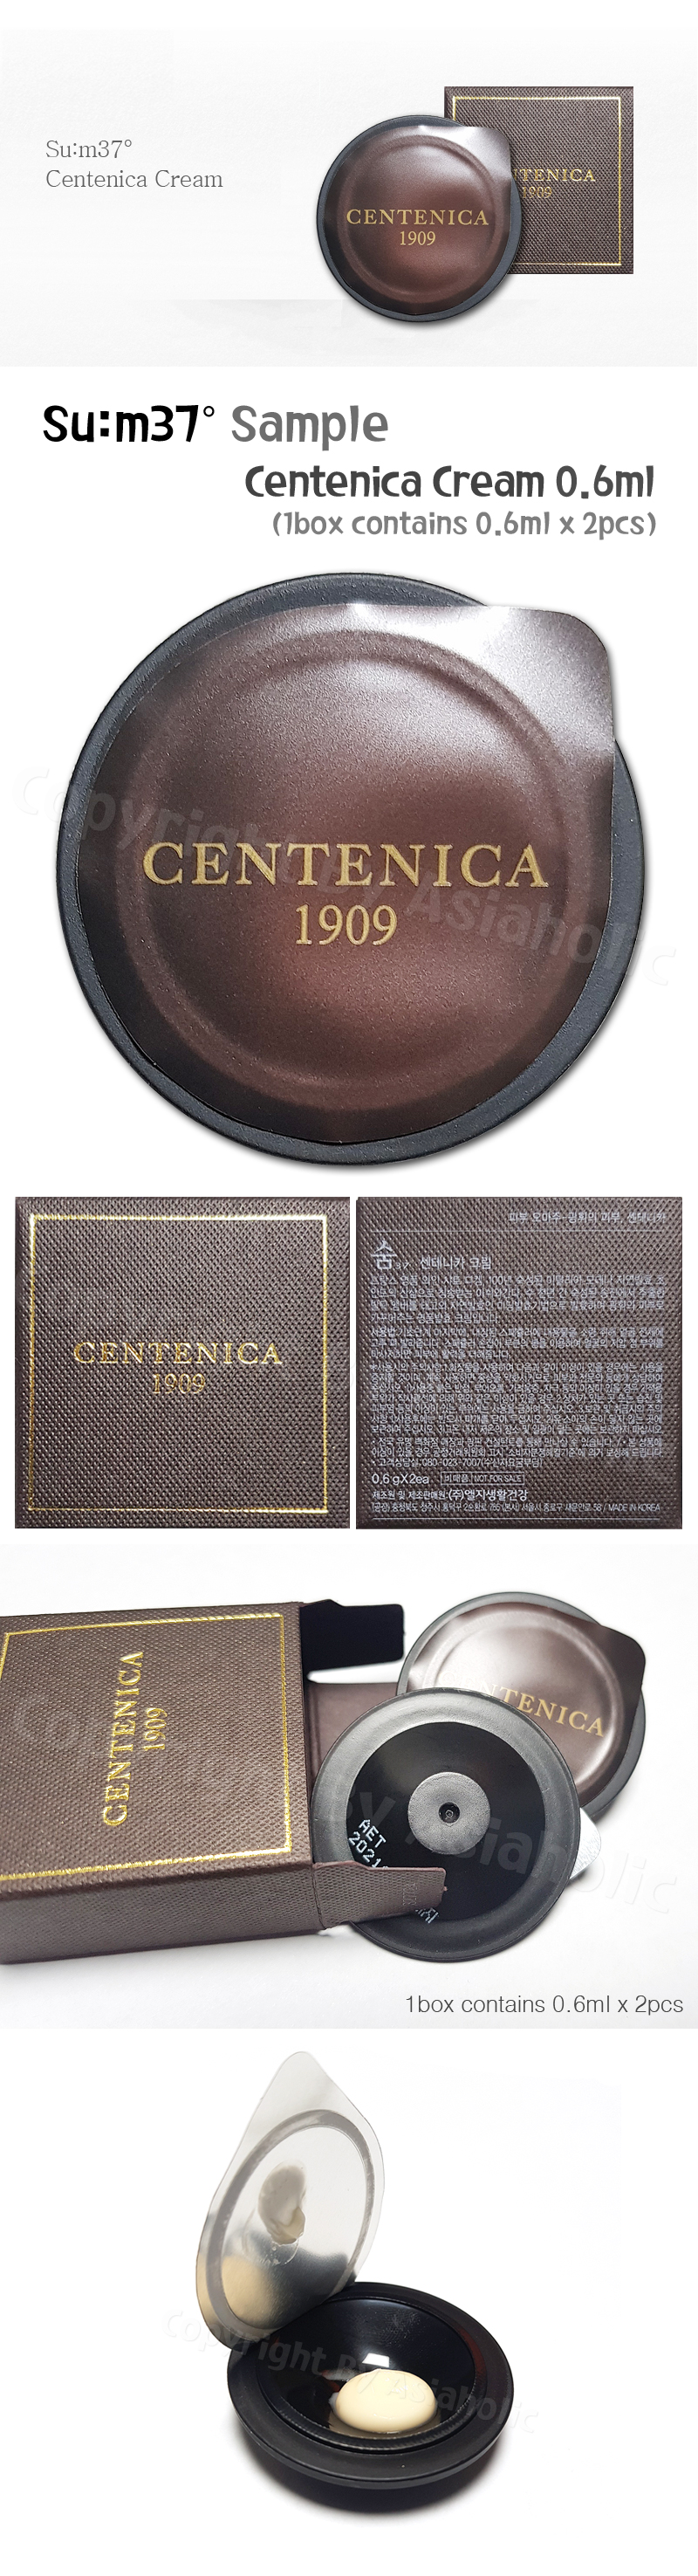 SU:M37 Centenica Cream 0.6ml x 14pcs (7Box) Premium Sample Sum37 Newest Version